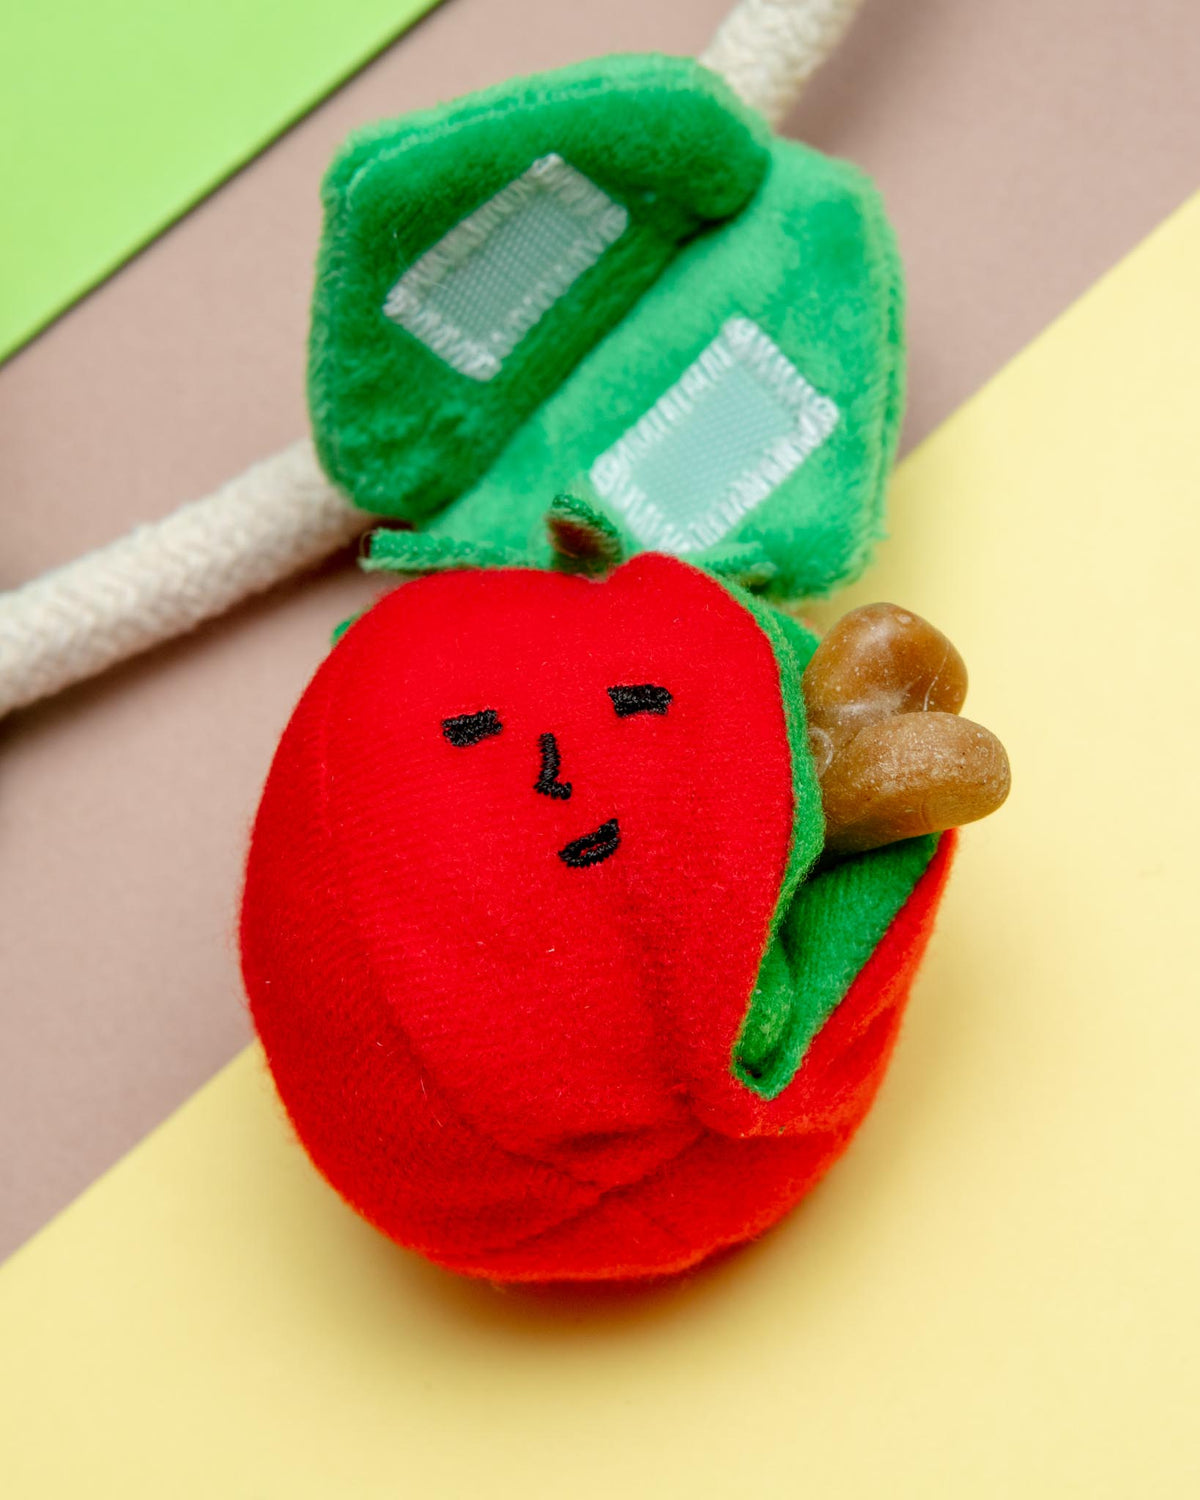 the furryfolks - Cherry Tomato Nosework & Tug Toy